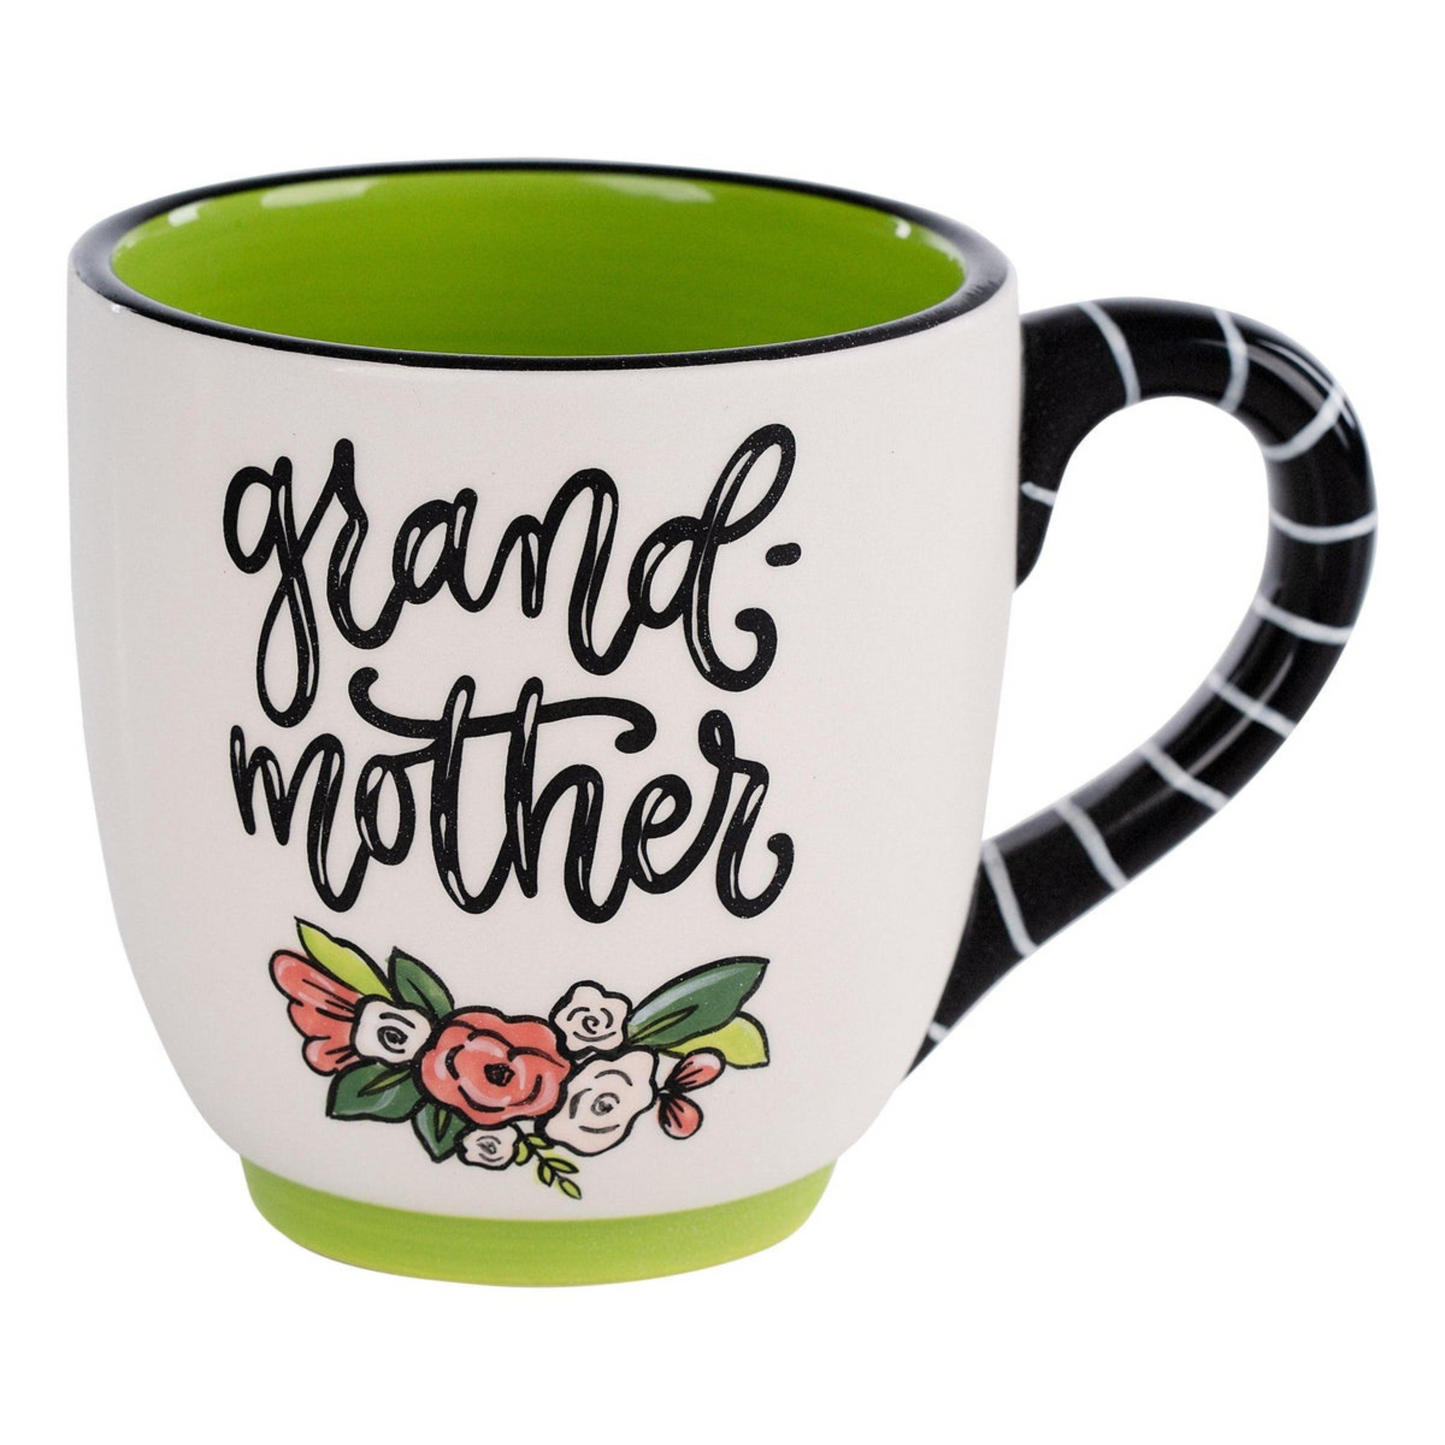 Grandmother You Are Loved Mug